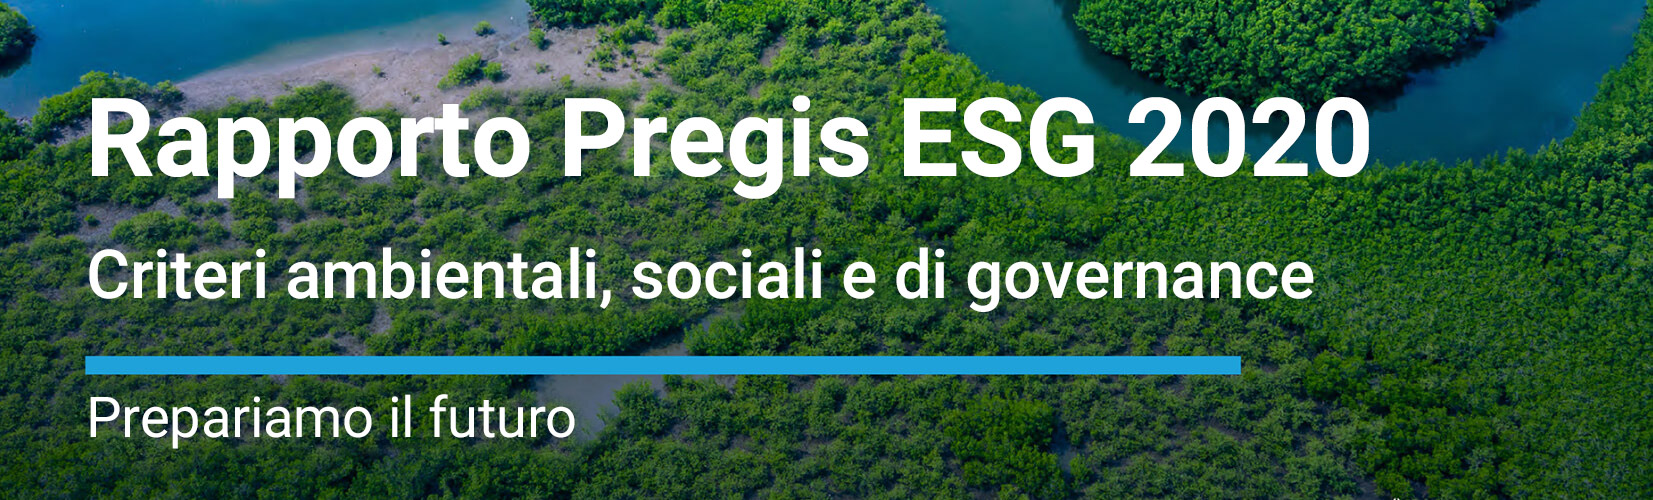 Report ESG Pregis 2020